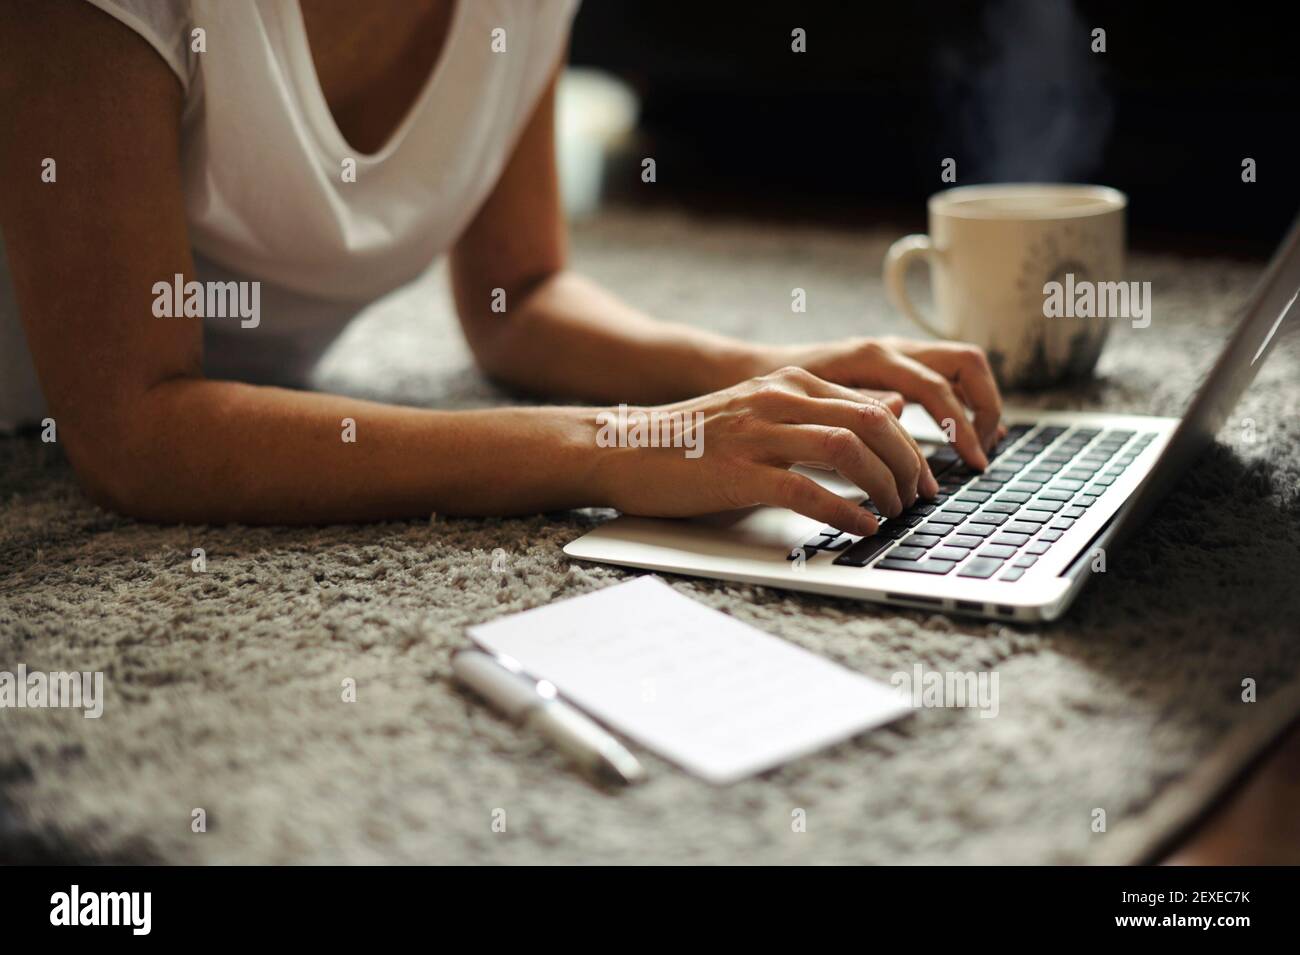 Nahaufnahme der Hände einer Frau, die an einem Laptop mit einer dampfenden Tasse heißem Getränk arbeitet. Telearbeit von zu Hause/ Start-up Lifestyle, weibliches Unternehmerkonzept Stockfoto